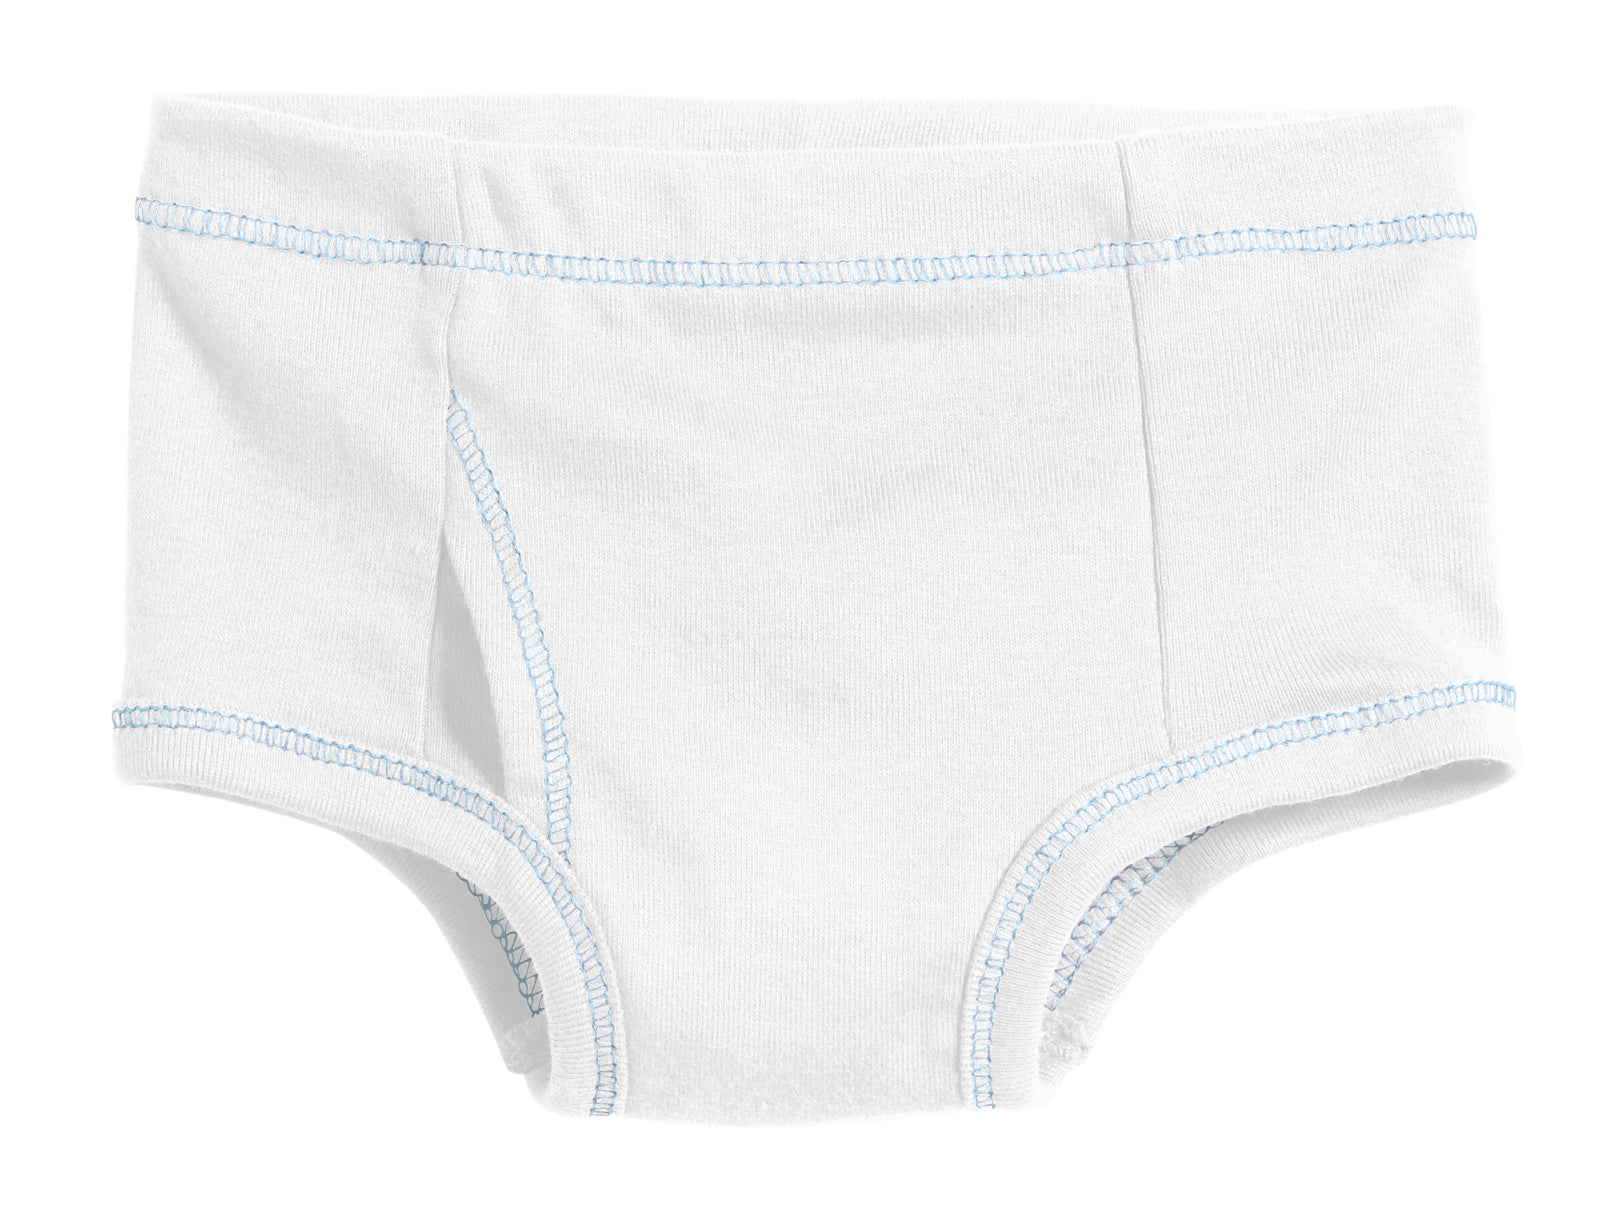 Ketyyh-chn99 Toddler Boys Underwears Boys Panties Underwear for Teens  Cotton Briefs White,140 